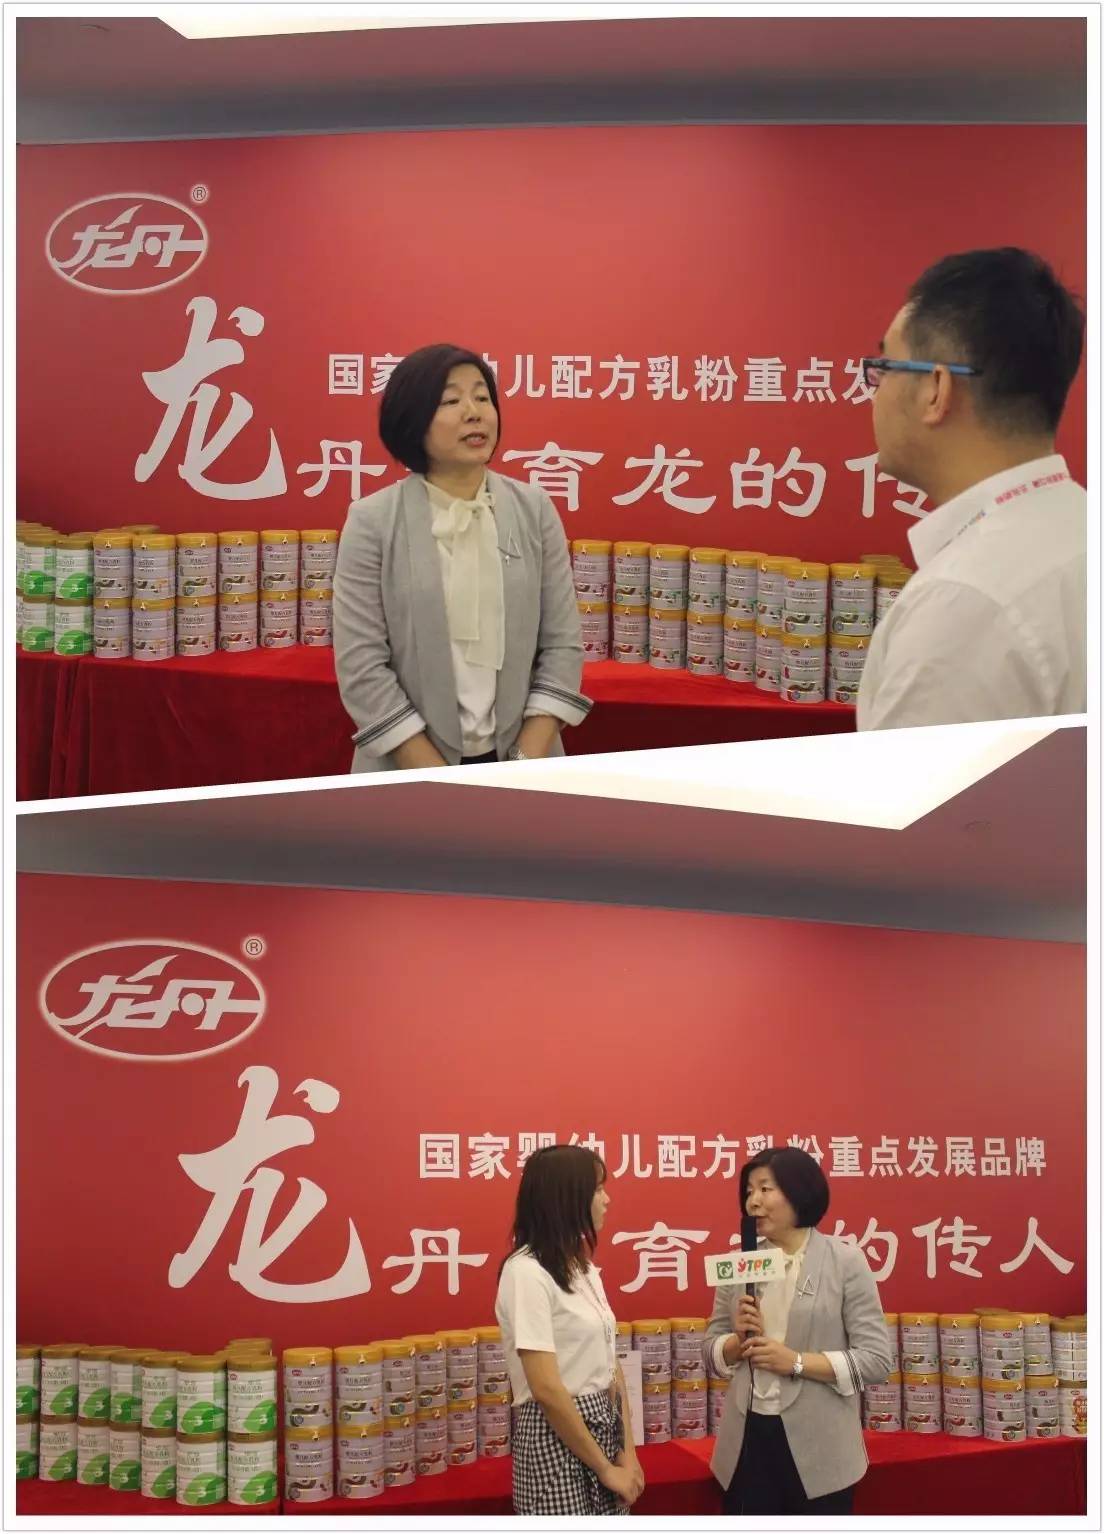 黑龙江业集团总裁,龙丹业姜冬梅女士发表了题为《民族